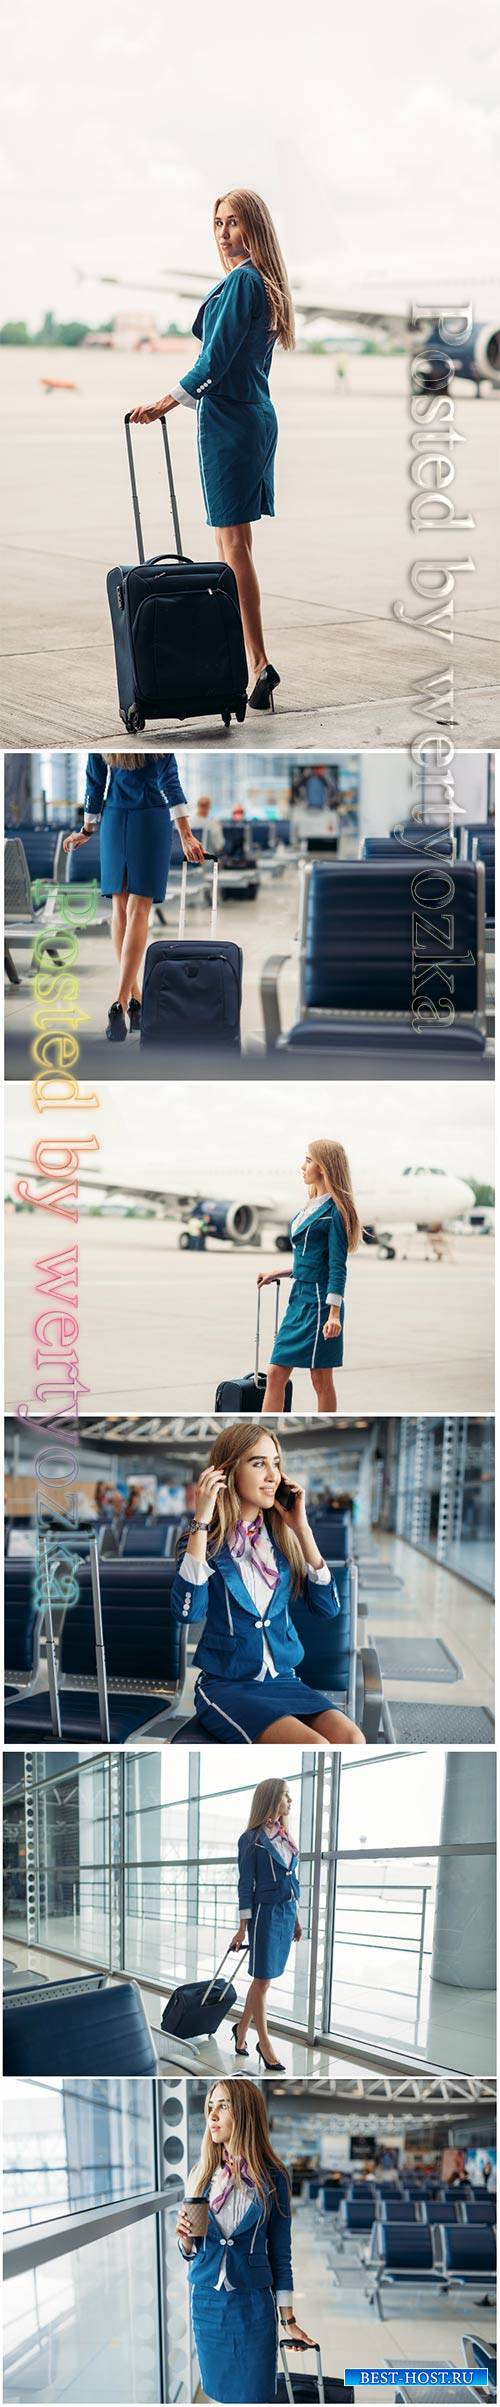 Stewardess beautiful stock photo